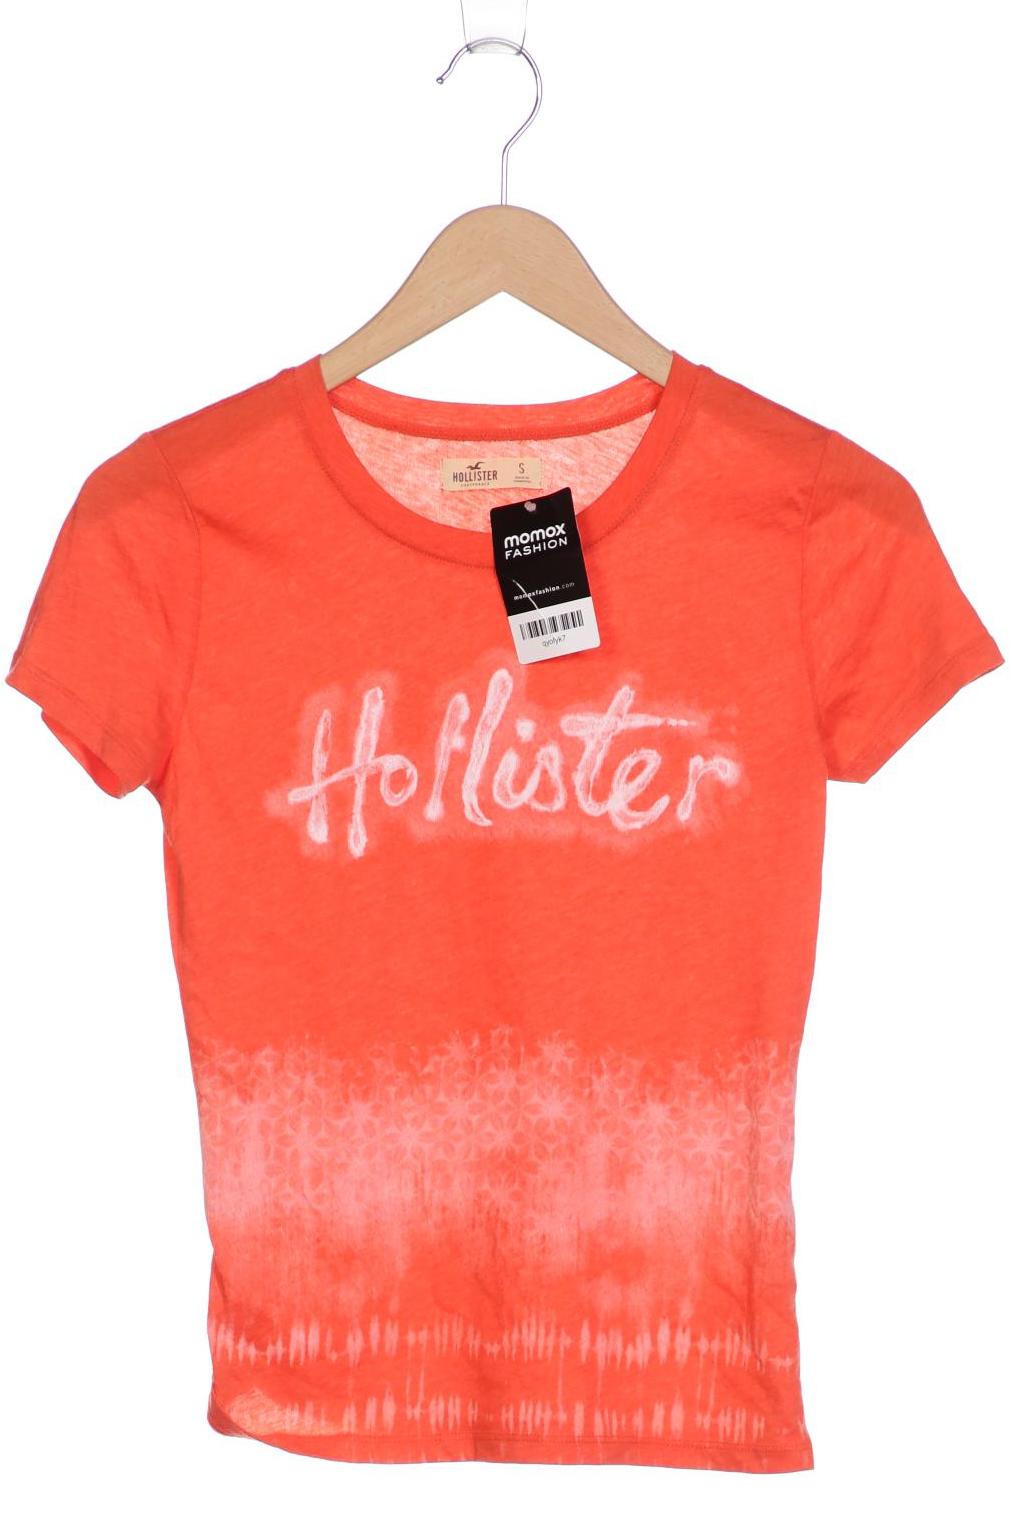 Hollister Damen T-Shirt, orange, Gr. 36 von Hollister